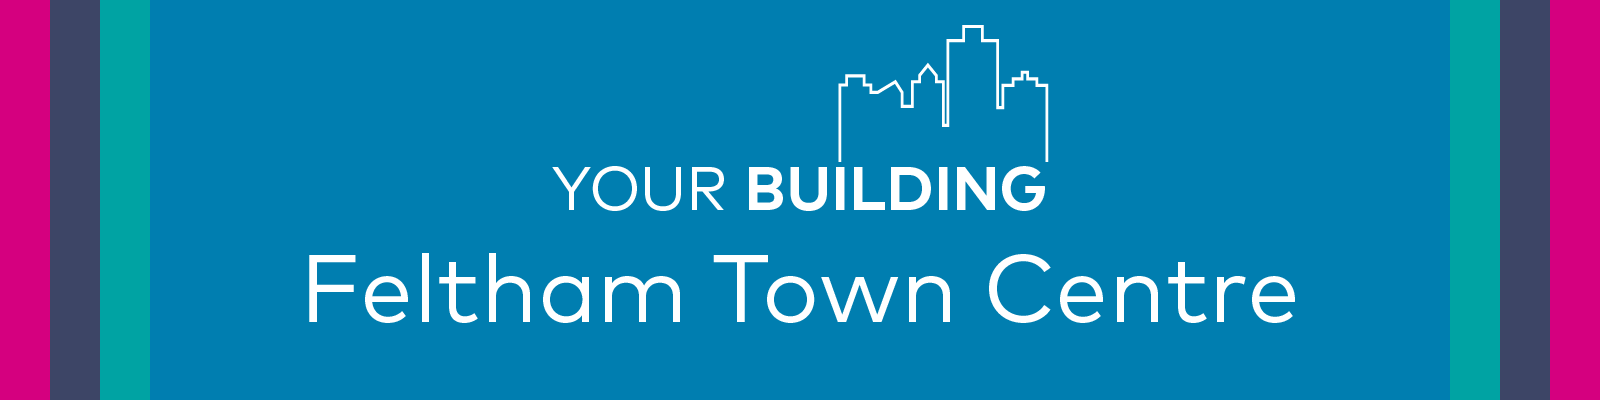 Your Building Feltham Town Centre